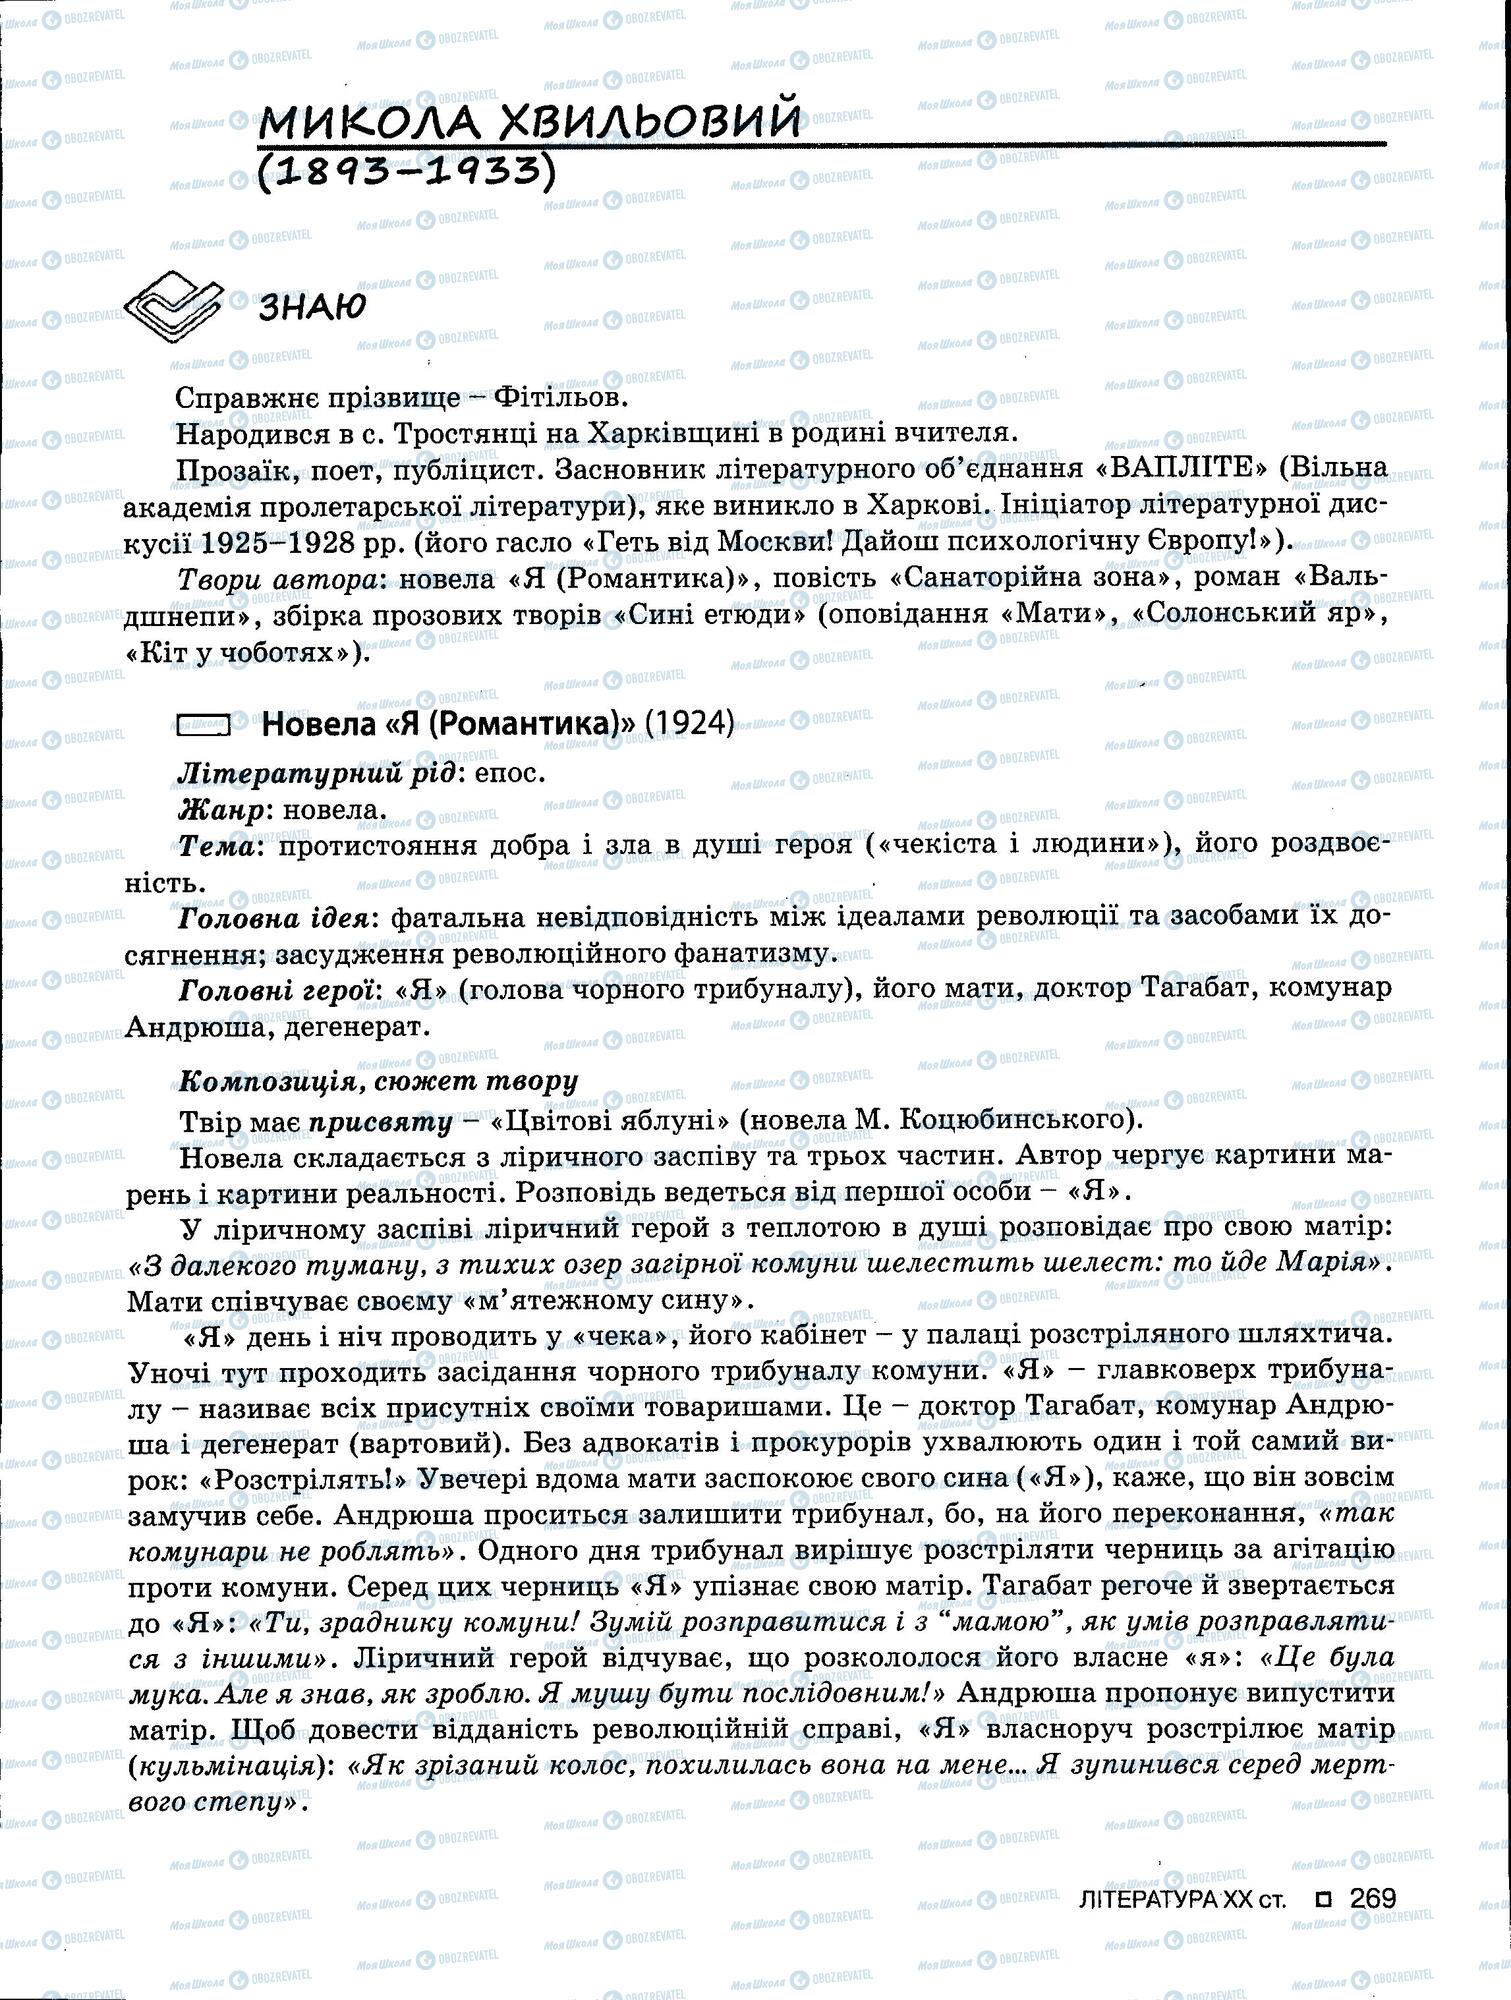 ЗНО Укр мова 11 класс страница 269